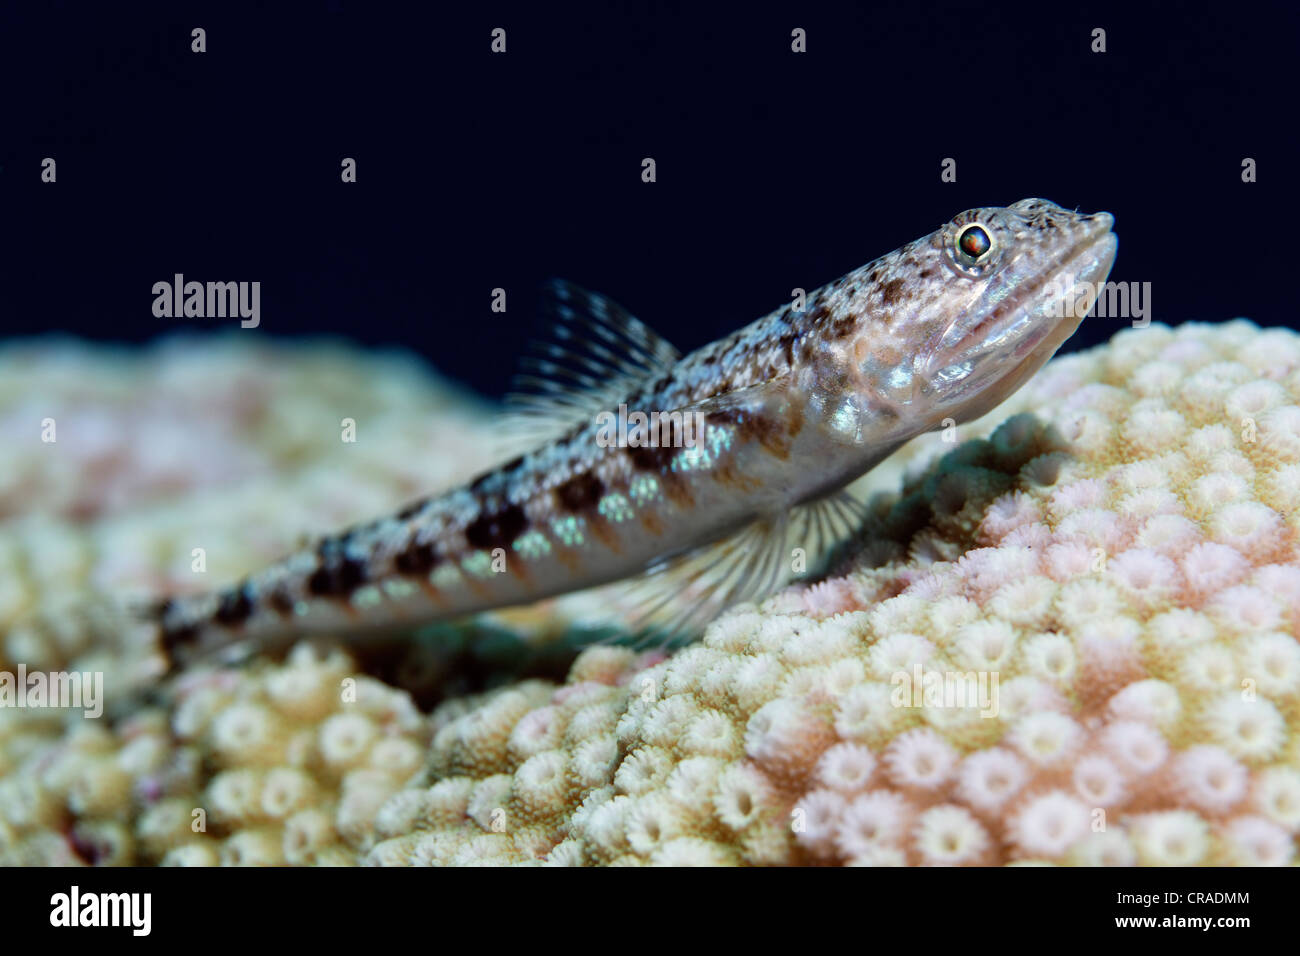 Lizardfish panachée (Synodus variegatus) reposant sur des pierres de corail, Royaume hachémite de Jordanie, Mer Rouge, de l'Asie occidentale Banque D'Images